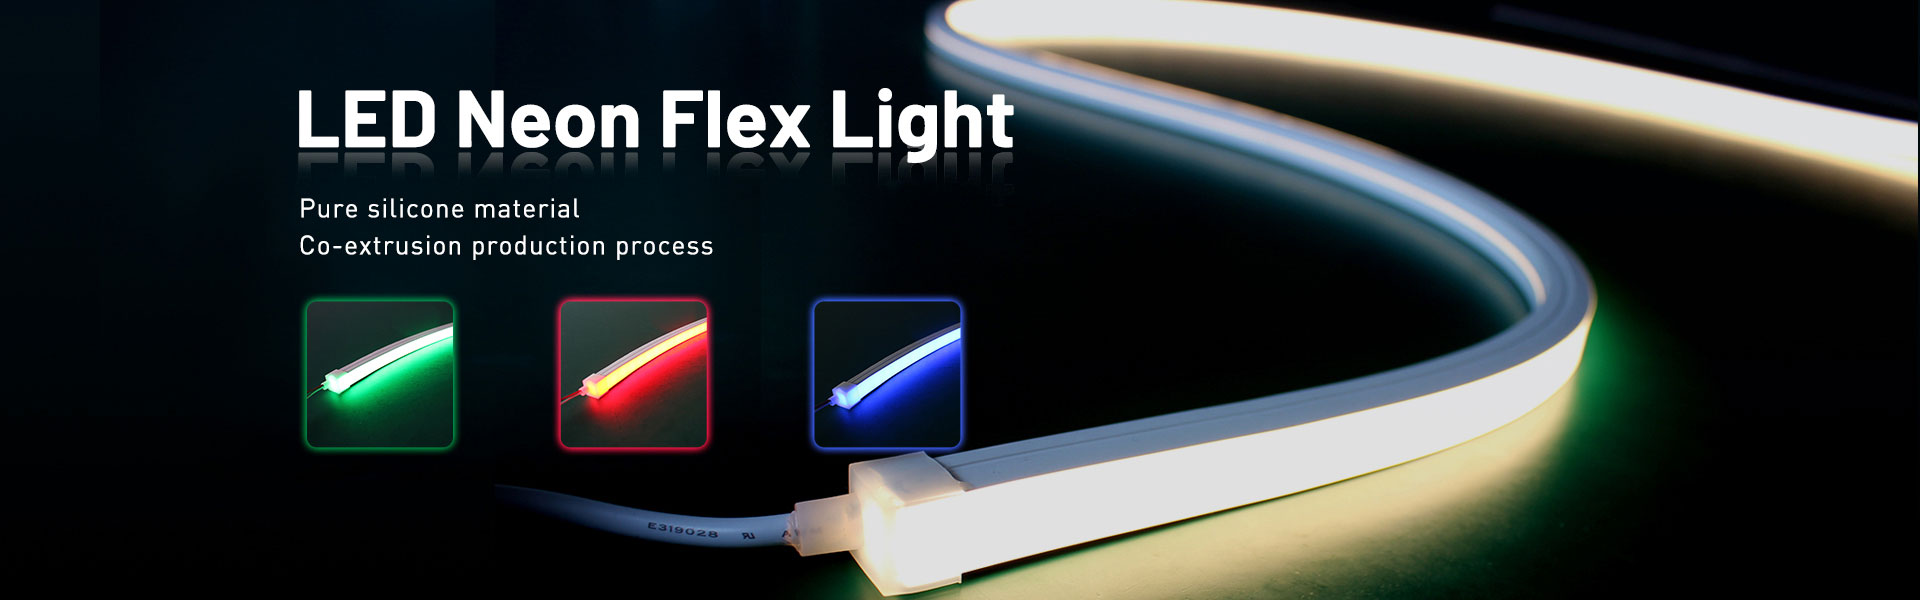 LED Neon Flex Light